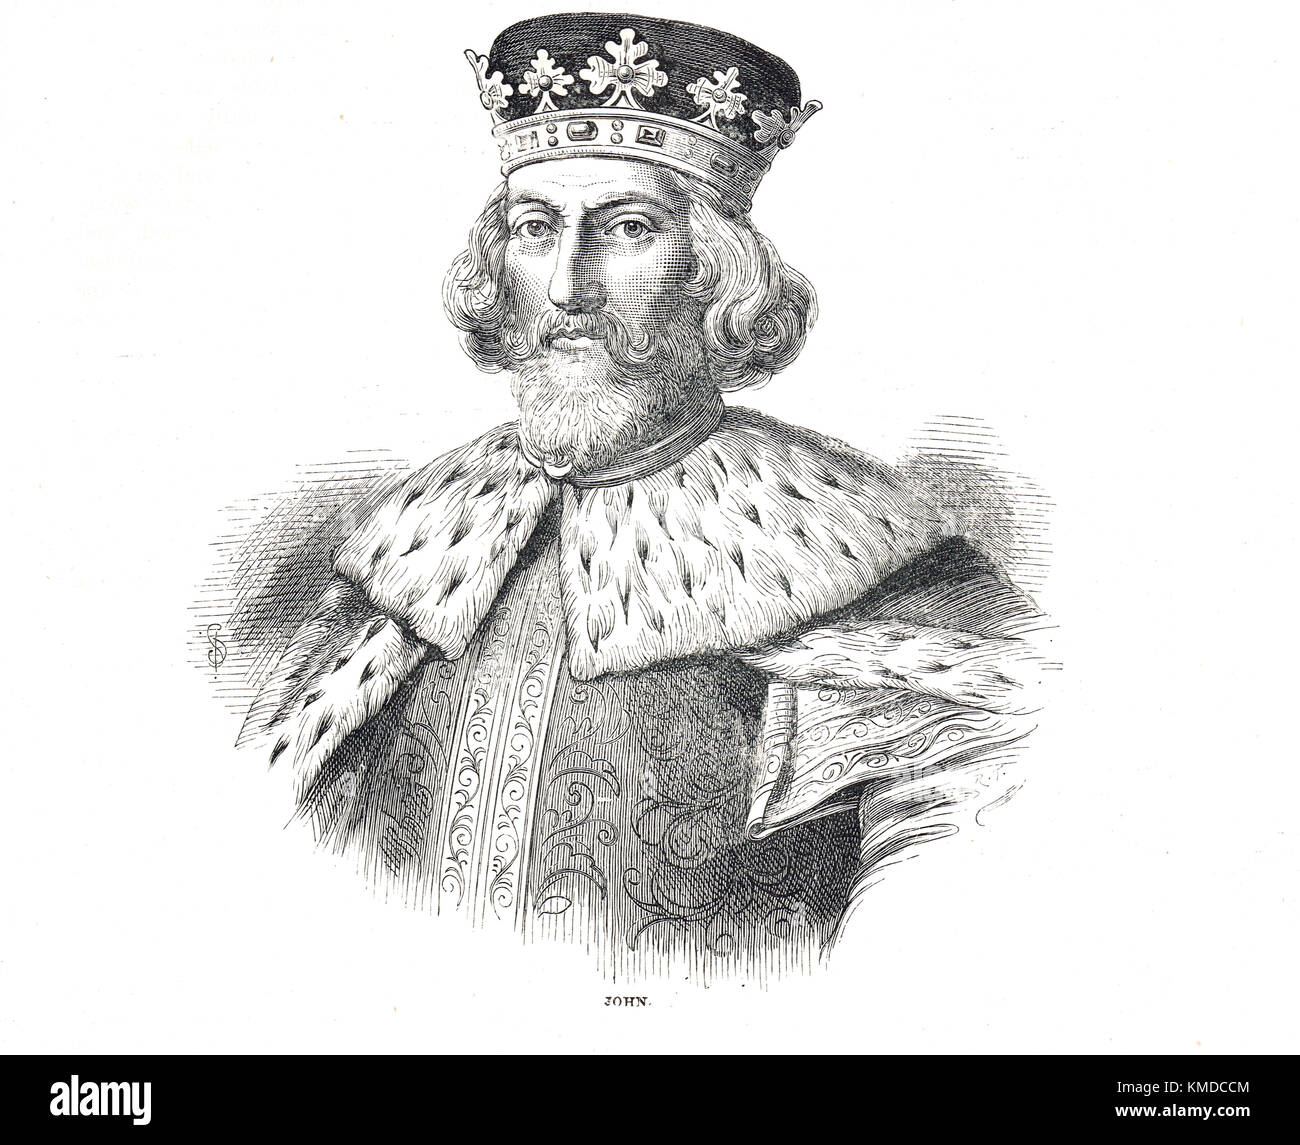 Roi Jean d'Angleterre (1166 – 1216) également connu sous le nom de John Lackland. Règne en 1199-1216 Banque D'Images